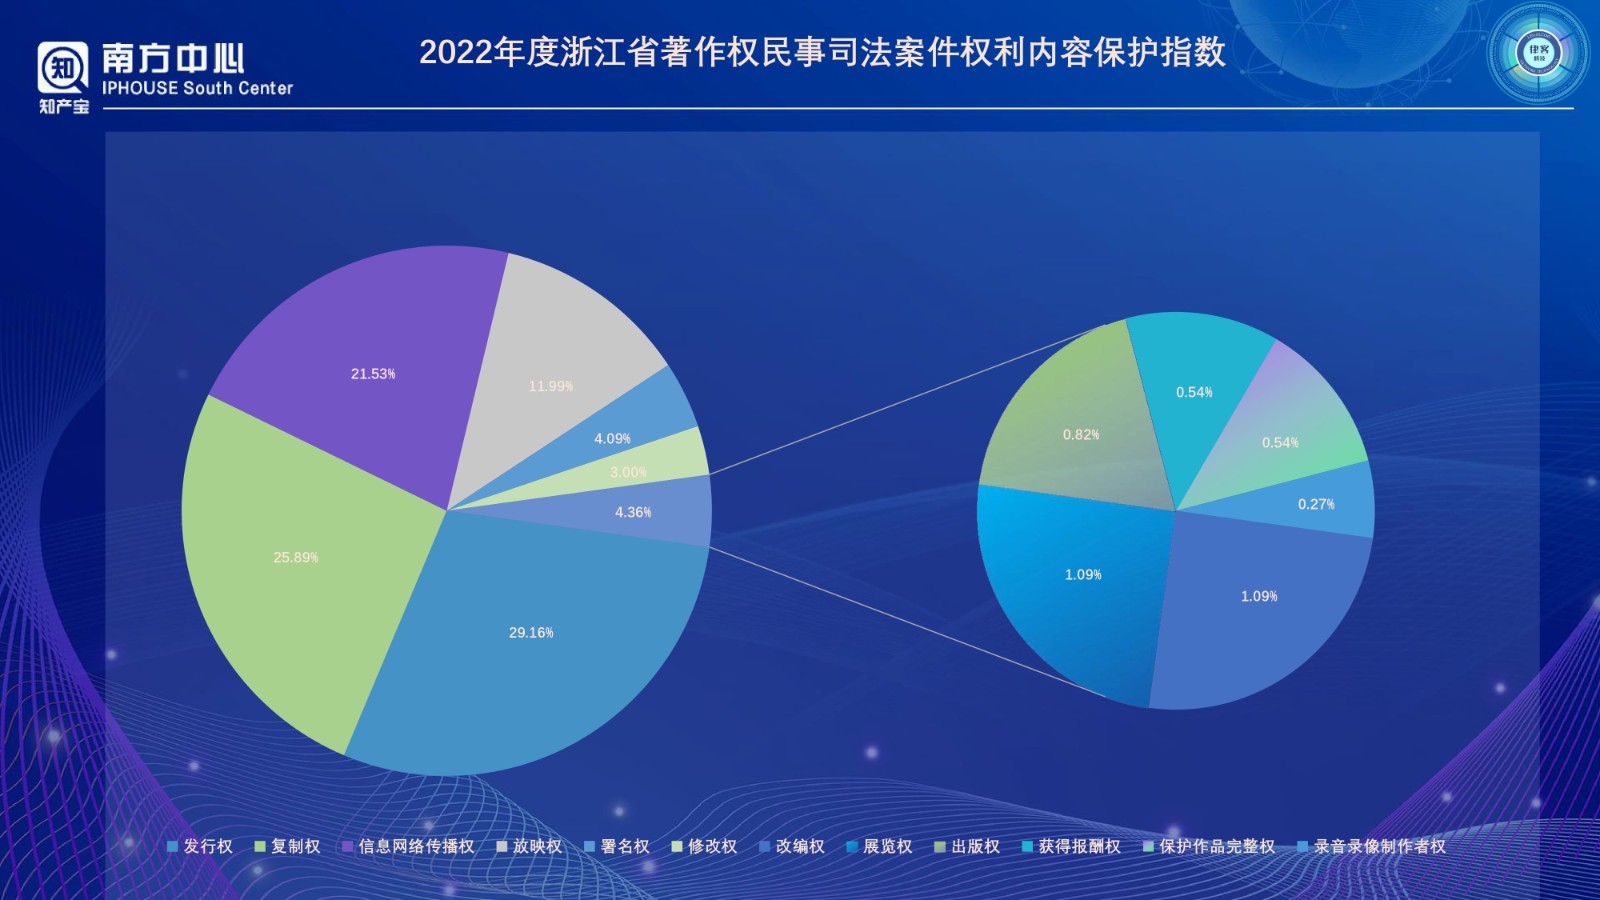 浙江省版权登记数据分析报告（2022年度）PPT-0410改_page-0016.jpg